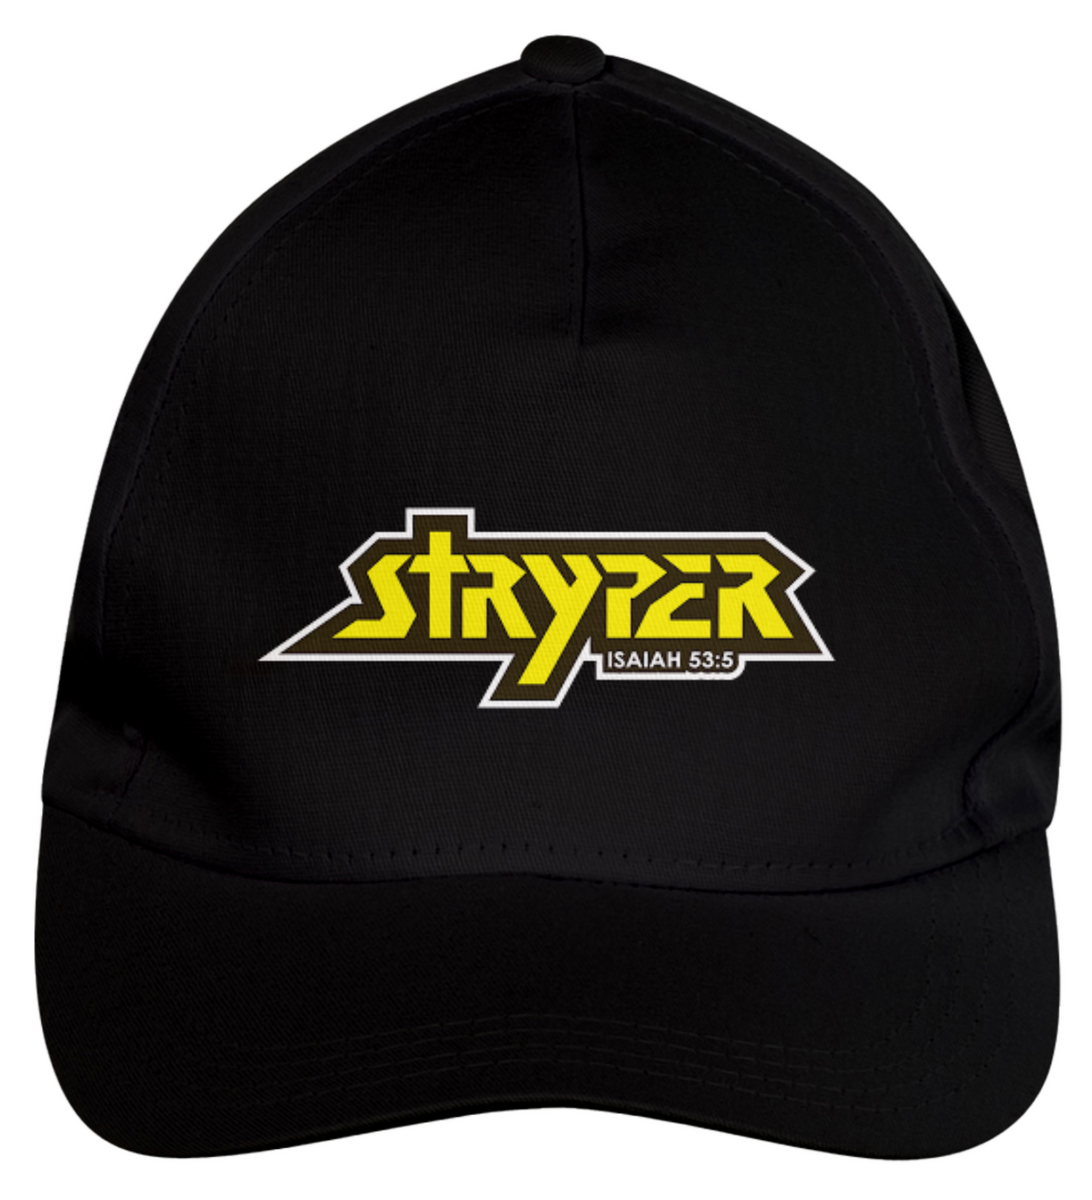 Nome do produto: Stryper